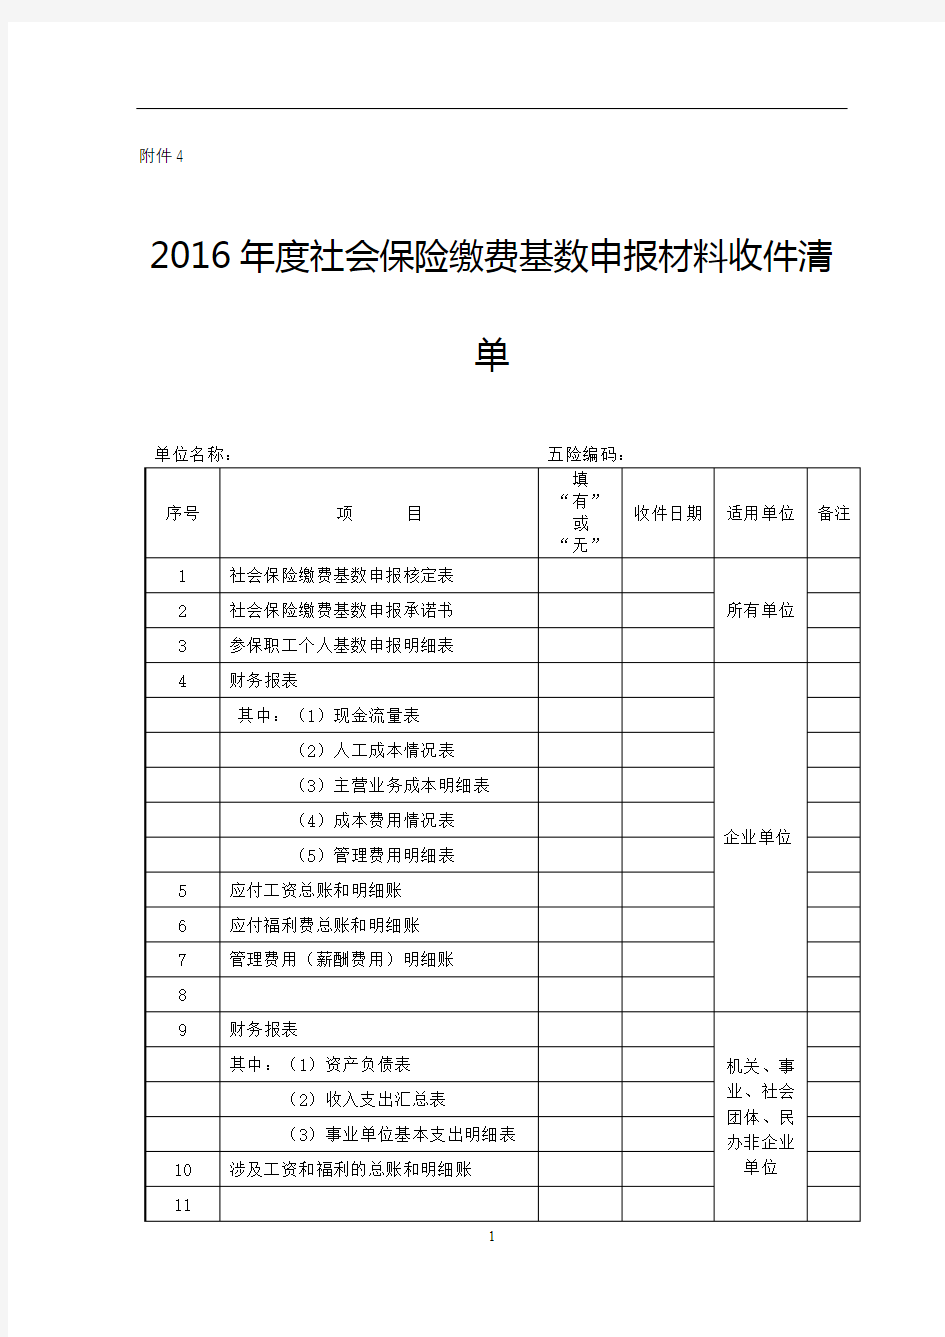 2016年度社会保险缴费基数申报材料收件清单【模板】